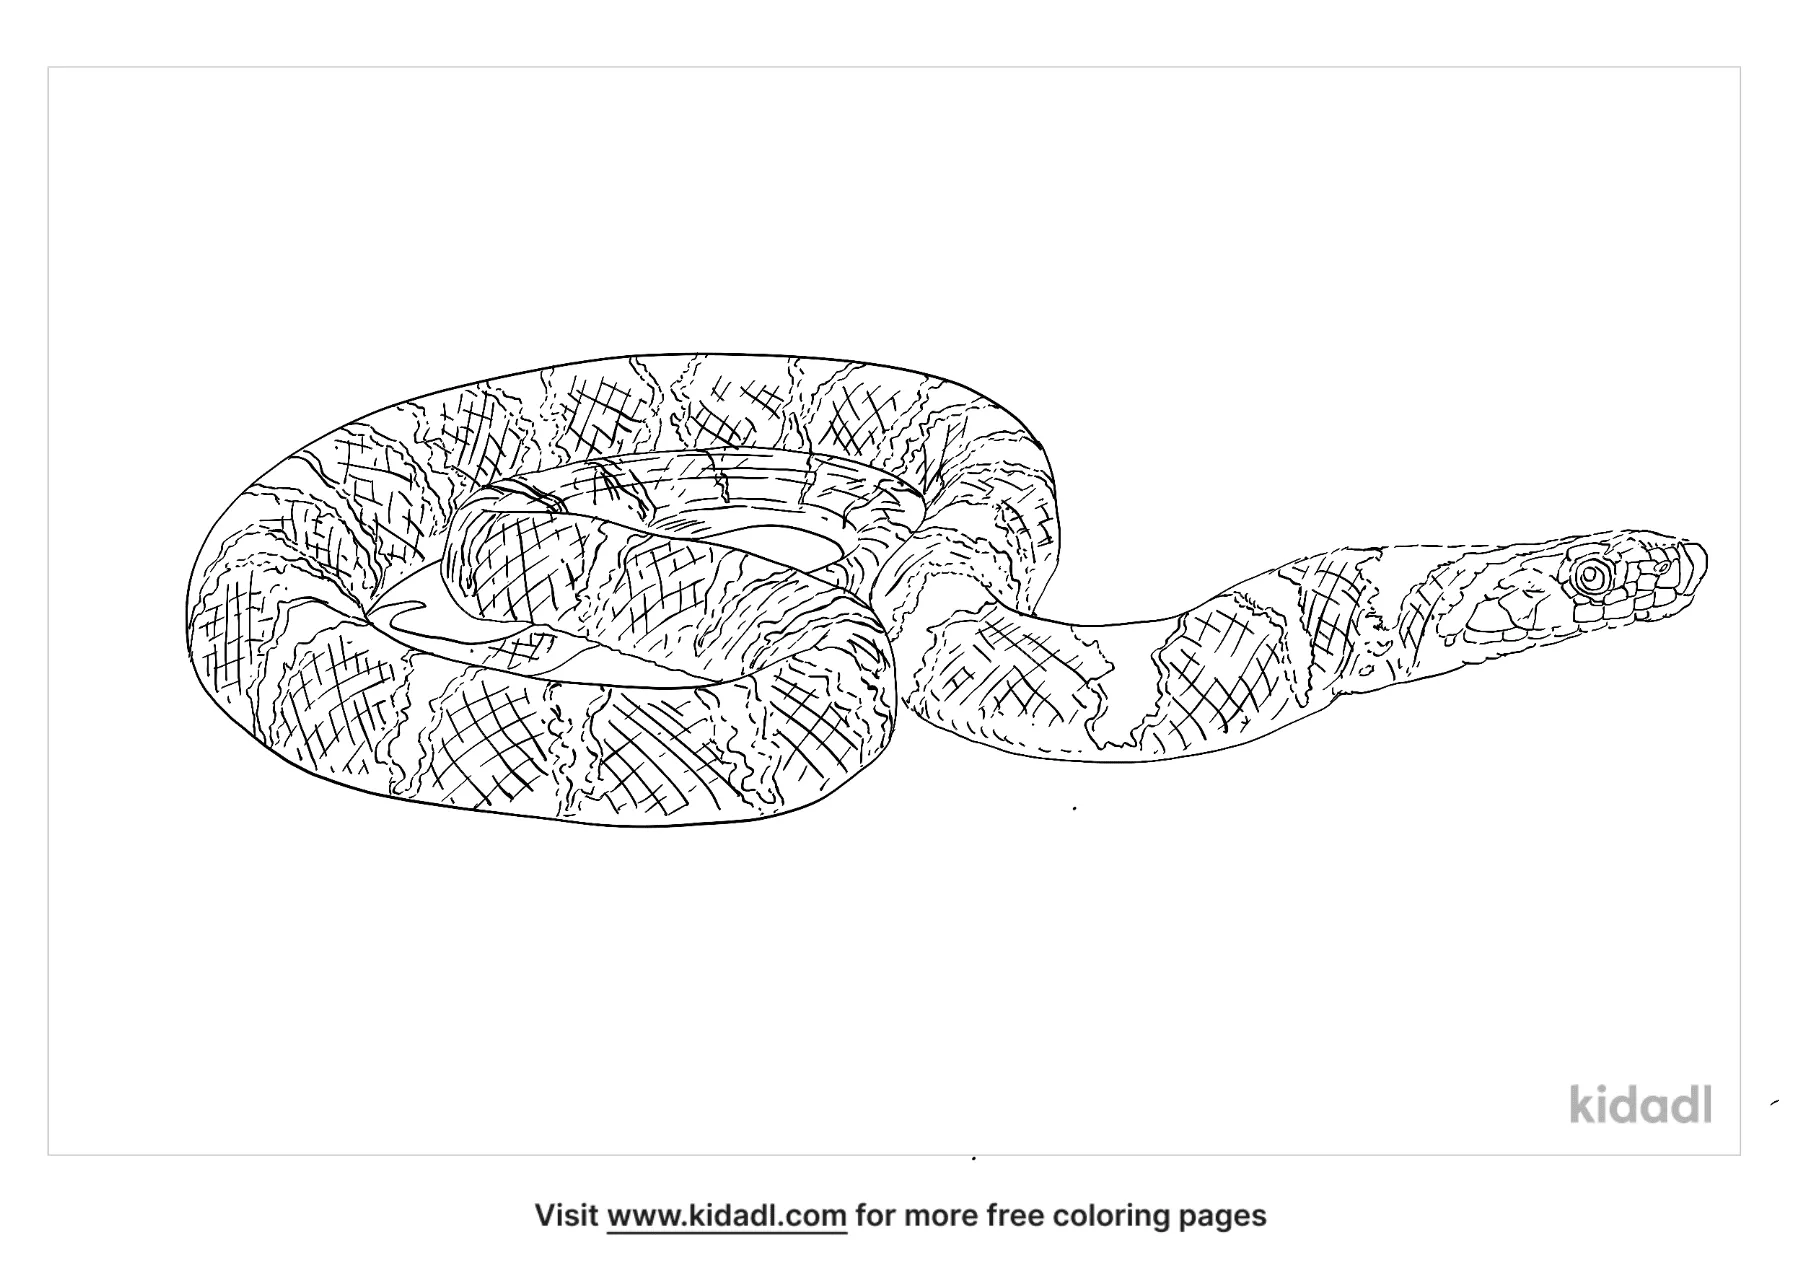 Kukri Snake Coloring Page